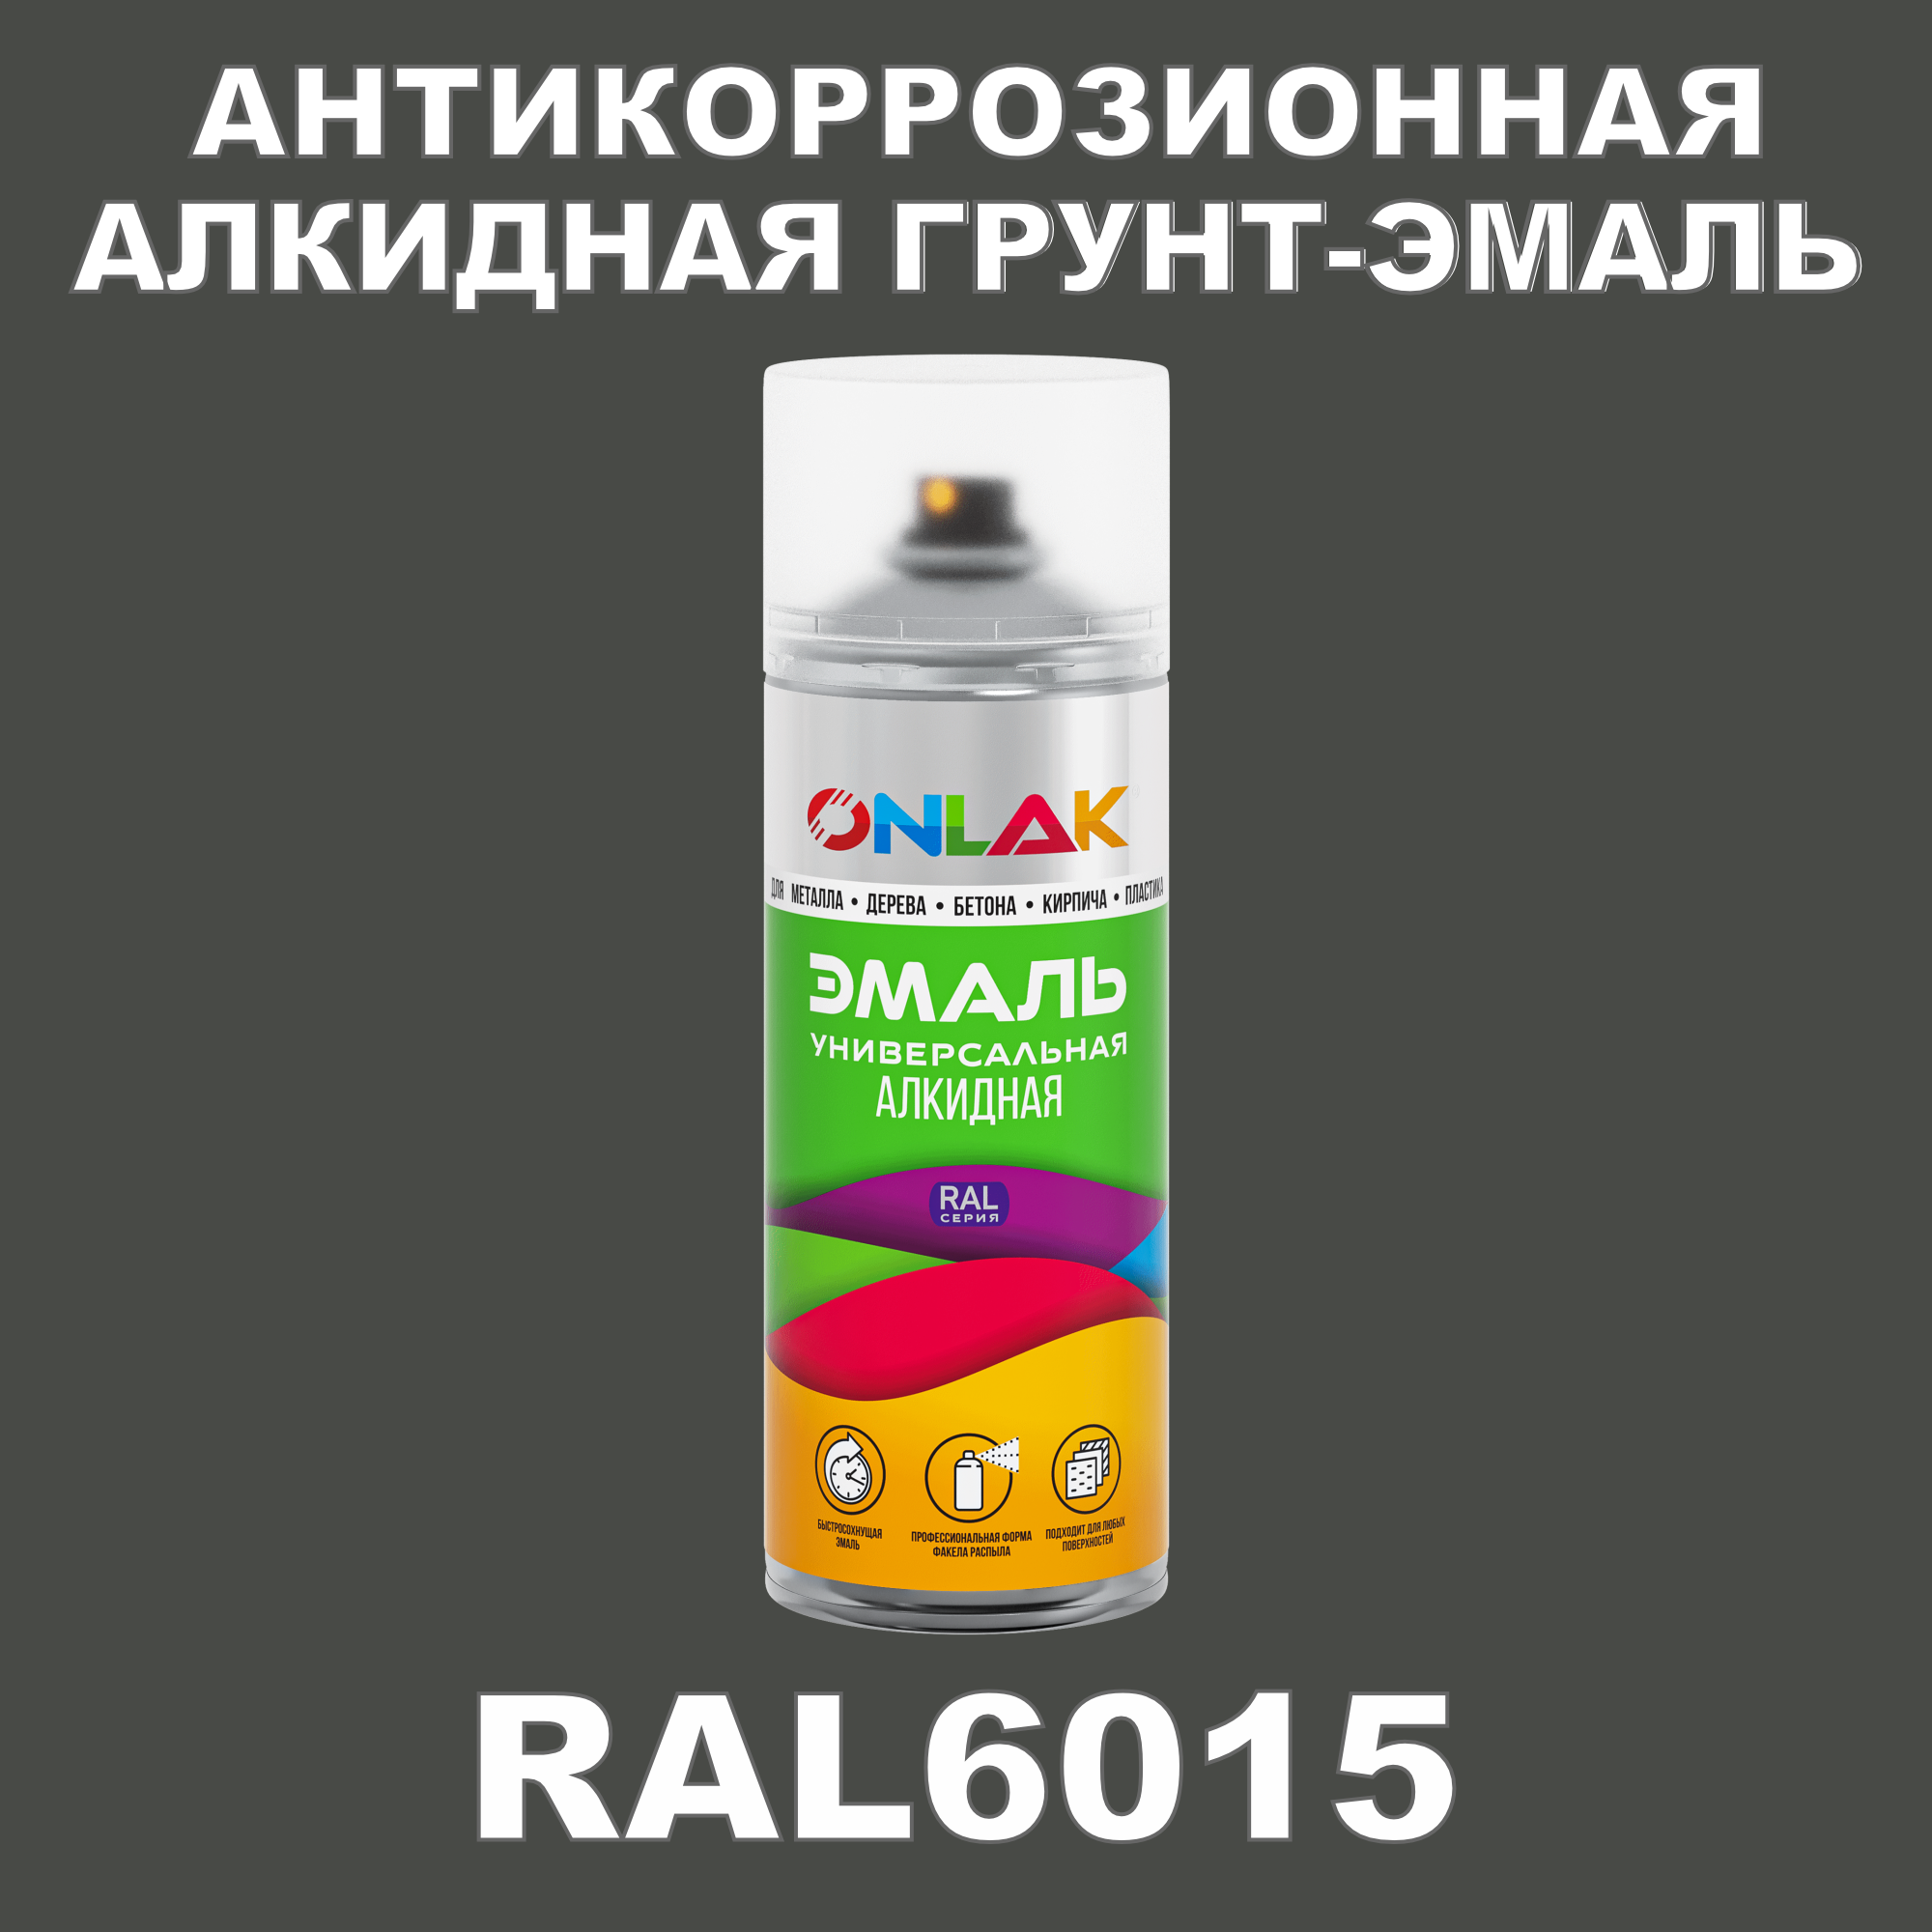 Антикоррозионная грунт-эмаль ONLAK RAL6015 полуматовая для металла и защиты от ржавчины